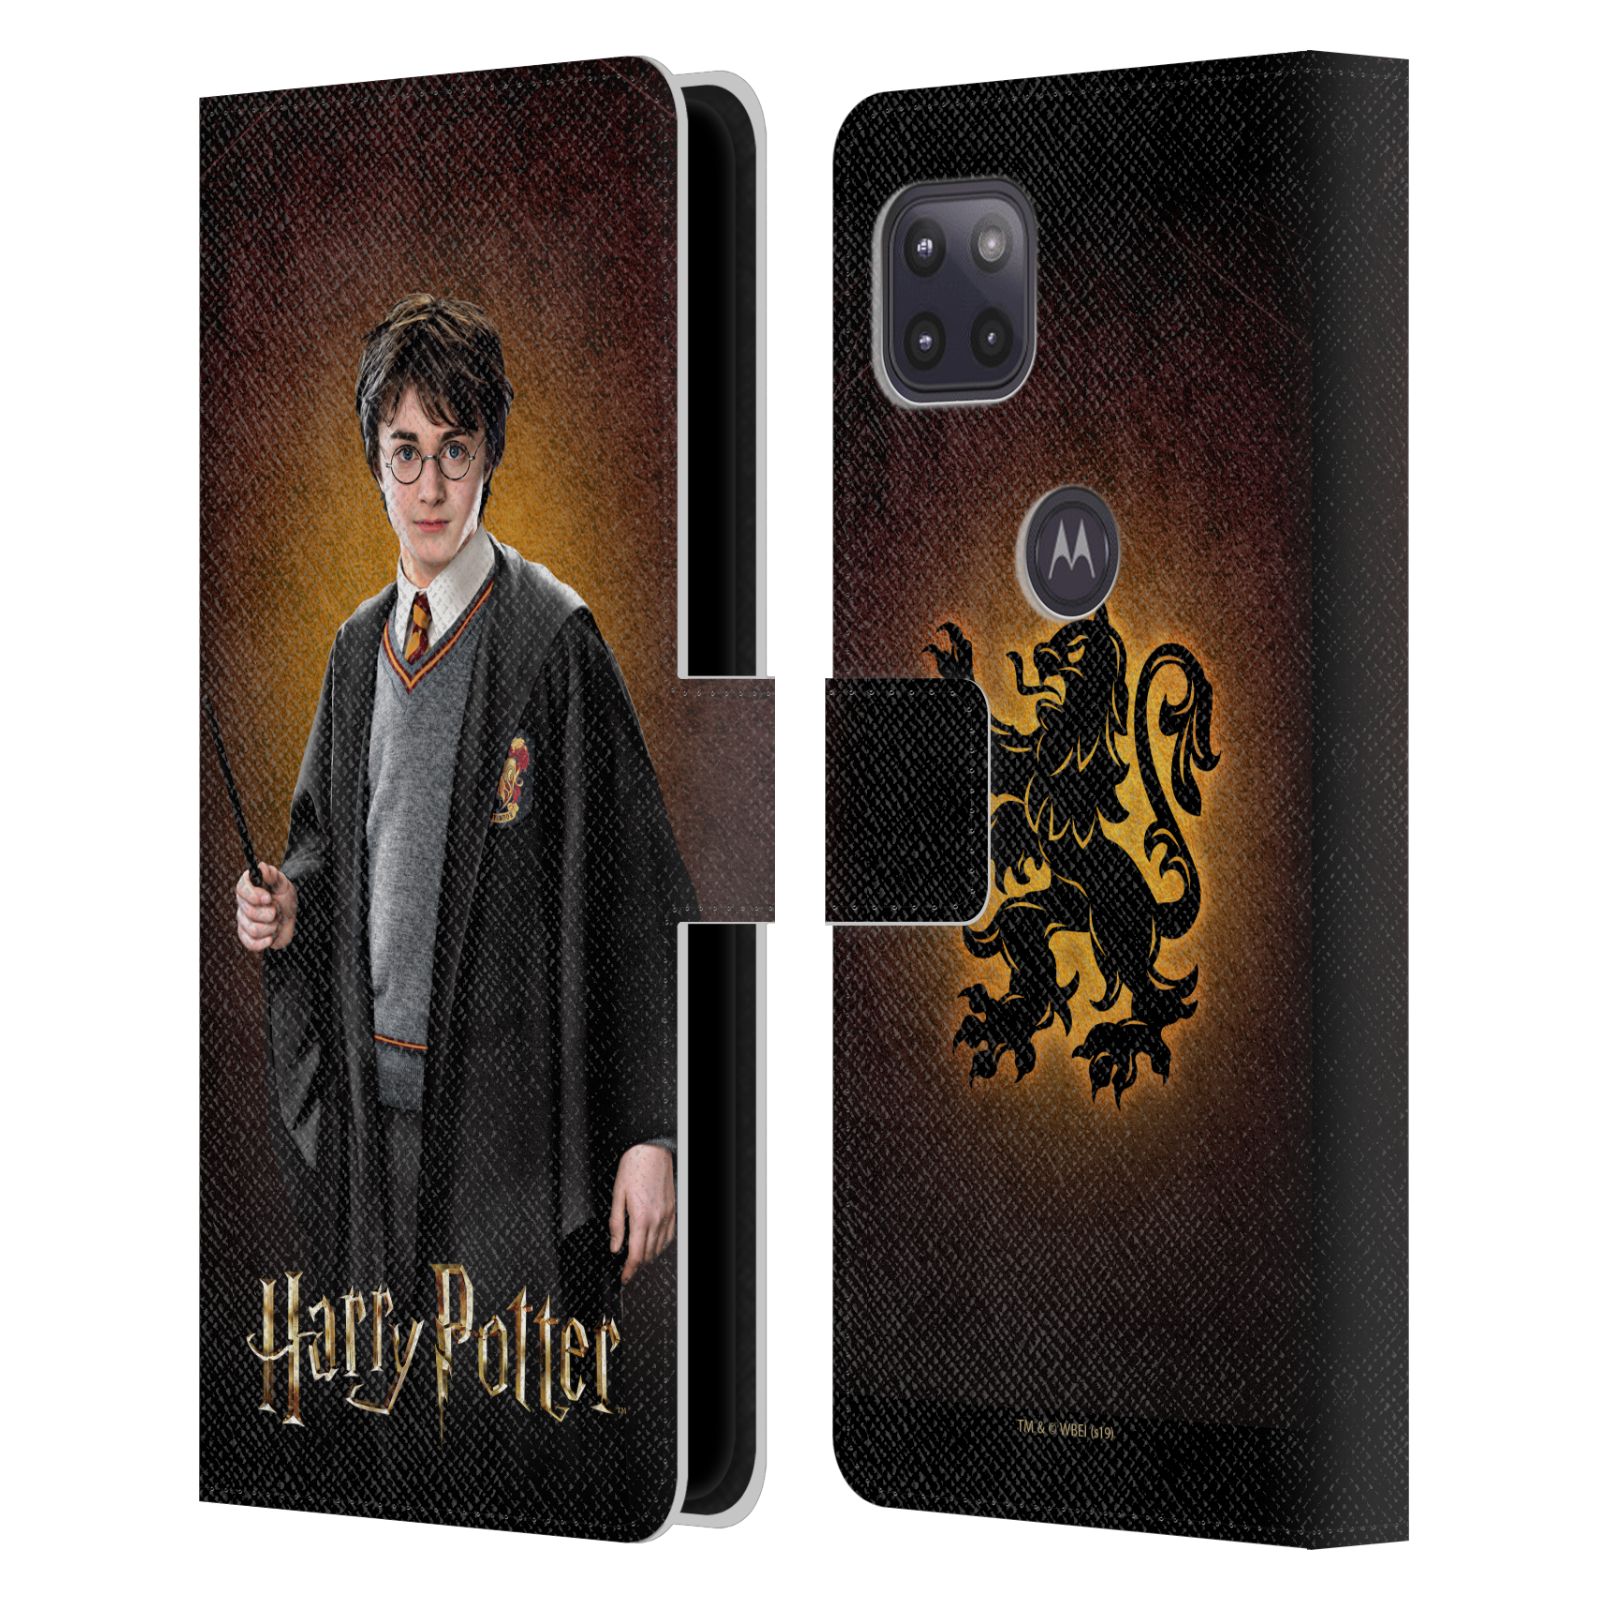 Pouzdro na mobil Motorola Moto G 5G - HEAD CASE - Harry Potter - Harry Potter portrét